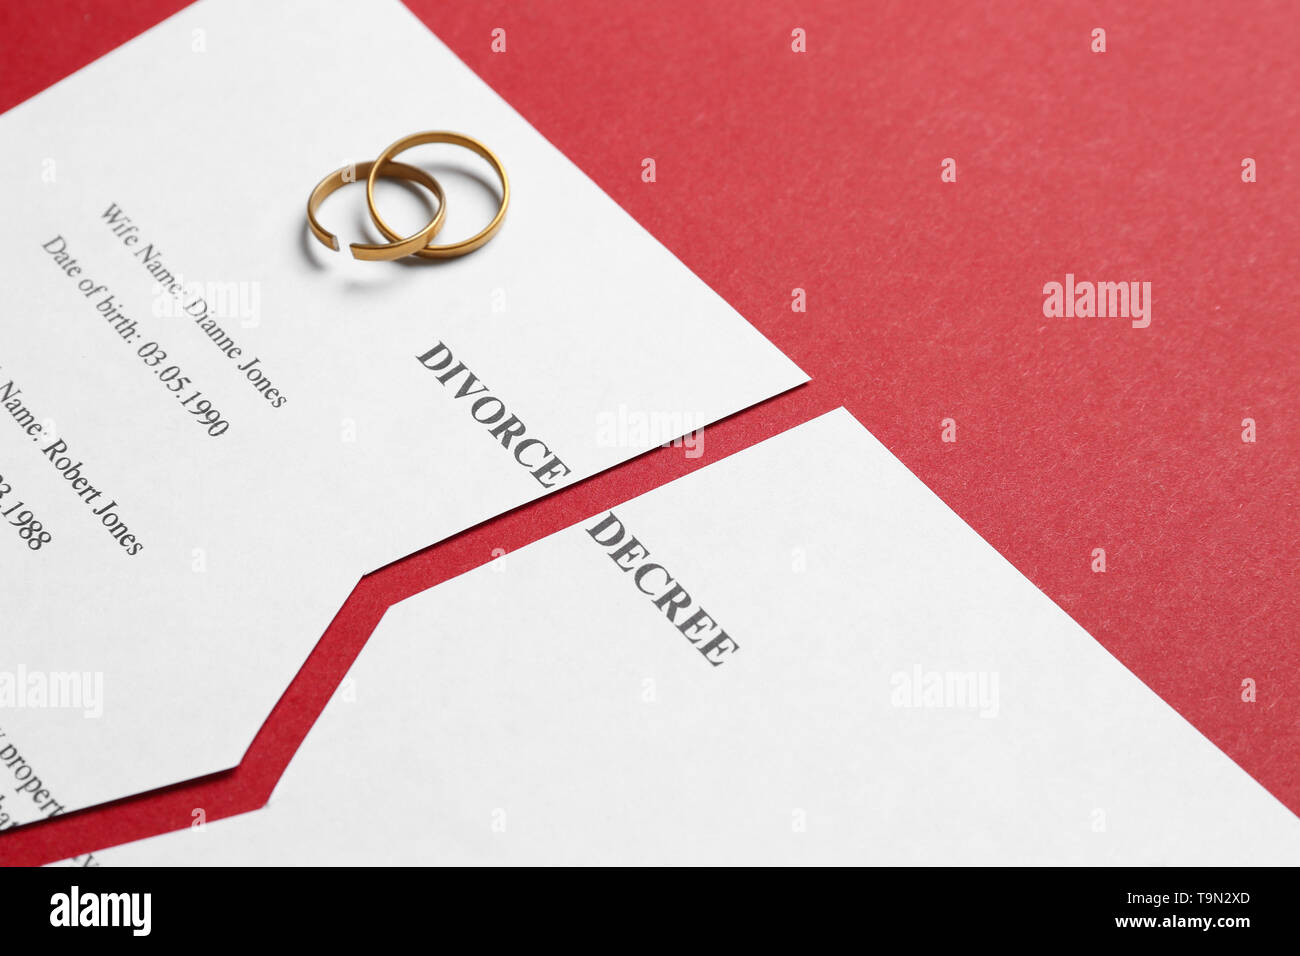 Le jugement de divorce déchiré avec des anneaux sur un fond de couleur Banque D'Images